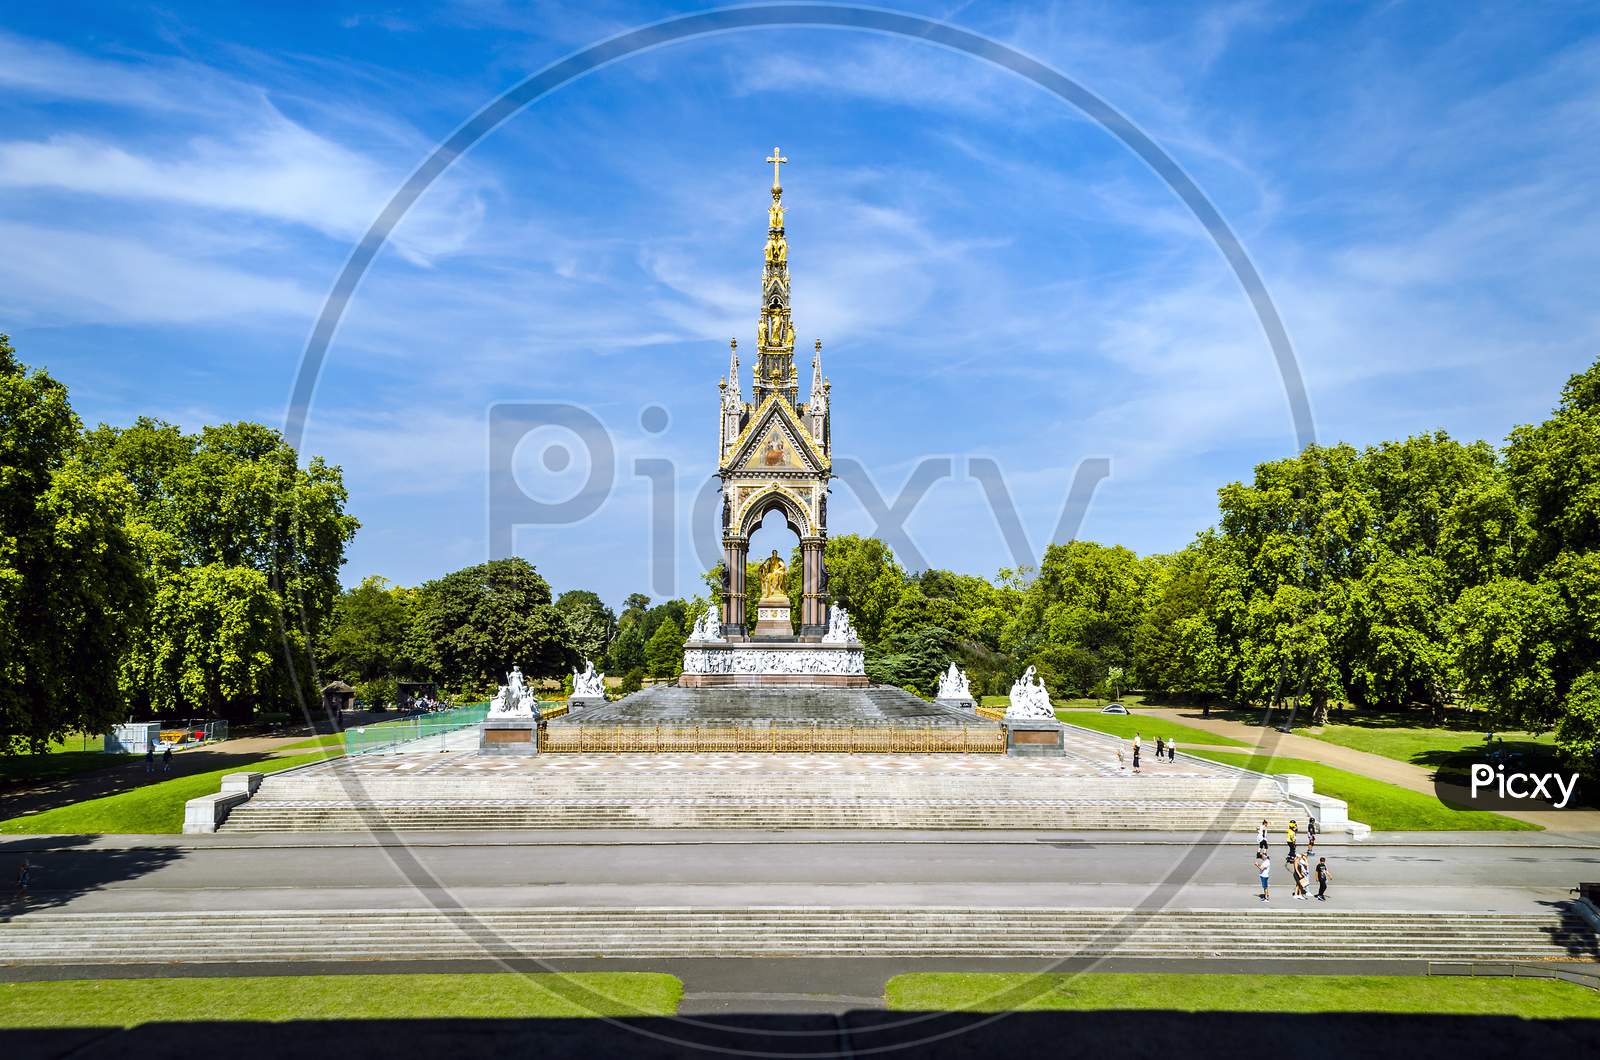 The Albert Memorial opposite the Royal Albert Hall is in Kensington Gardens London